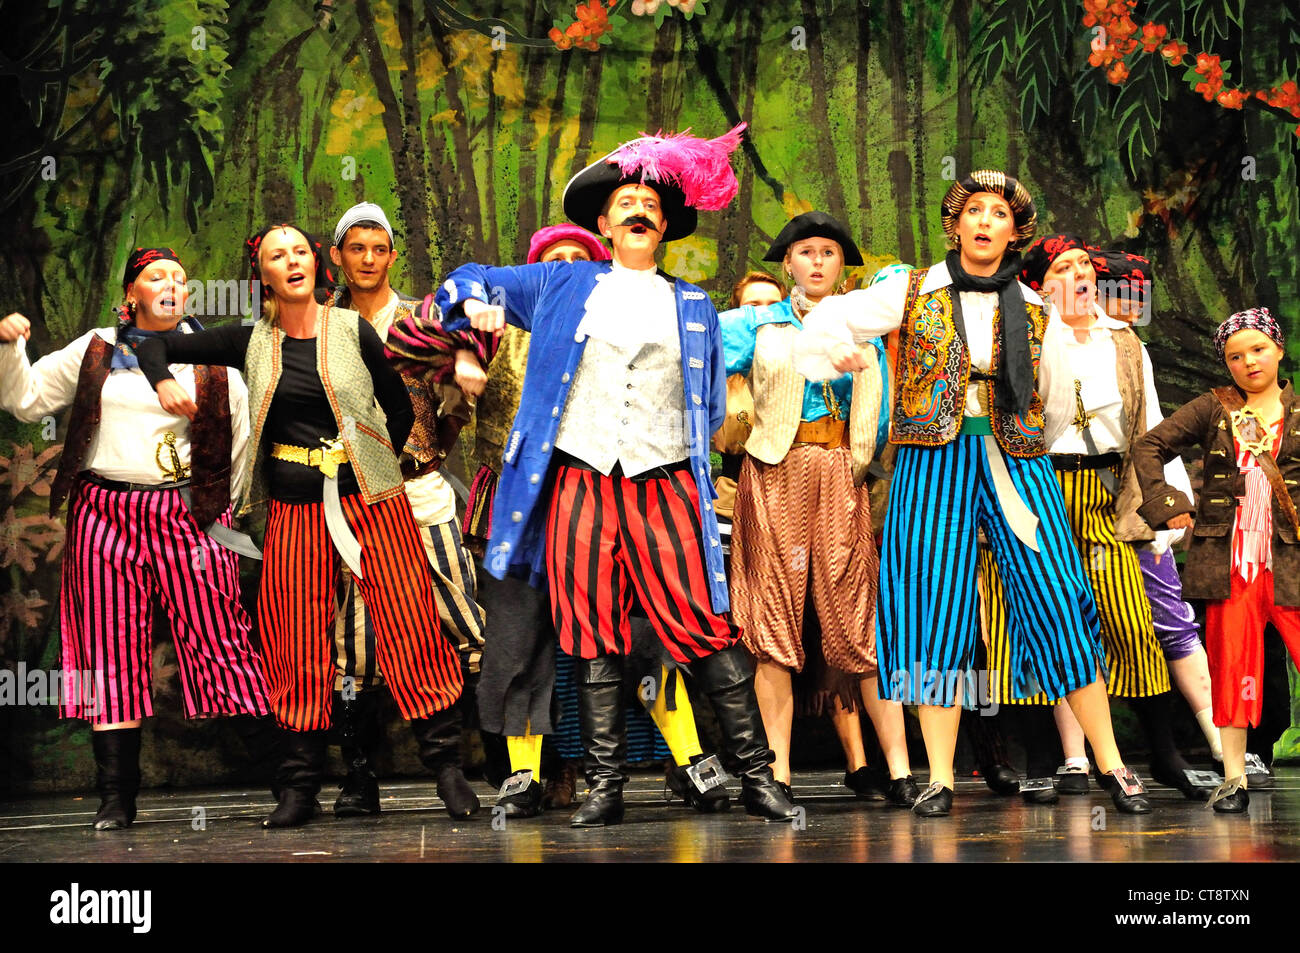 La comédie musicale "Peter Pan", une production théâtrale amateur Hounslow, Greater London, Angleterre, Royaume-Uni Banque D'Images